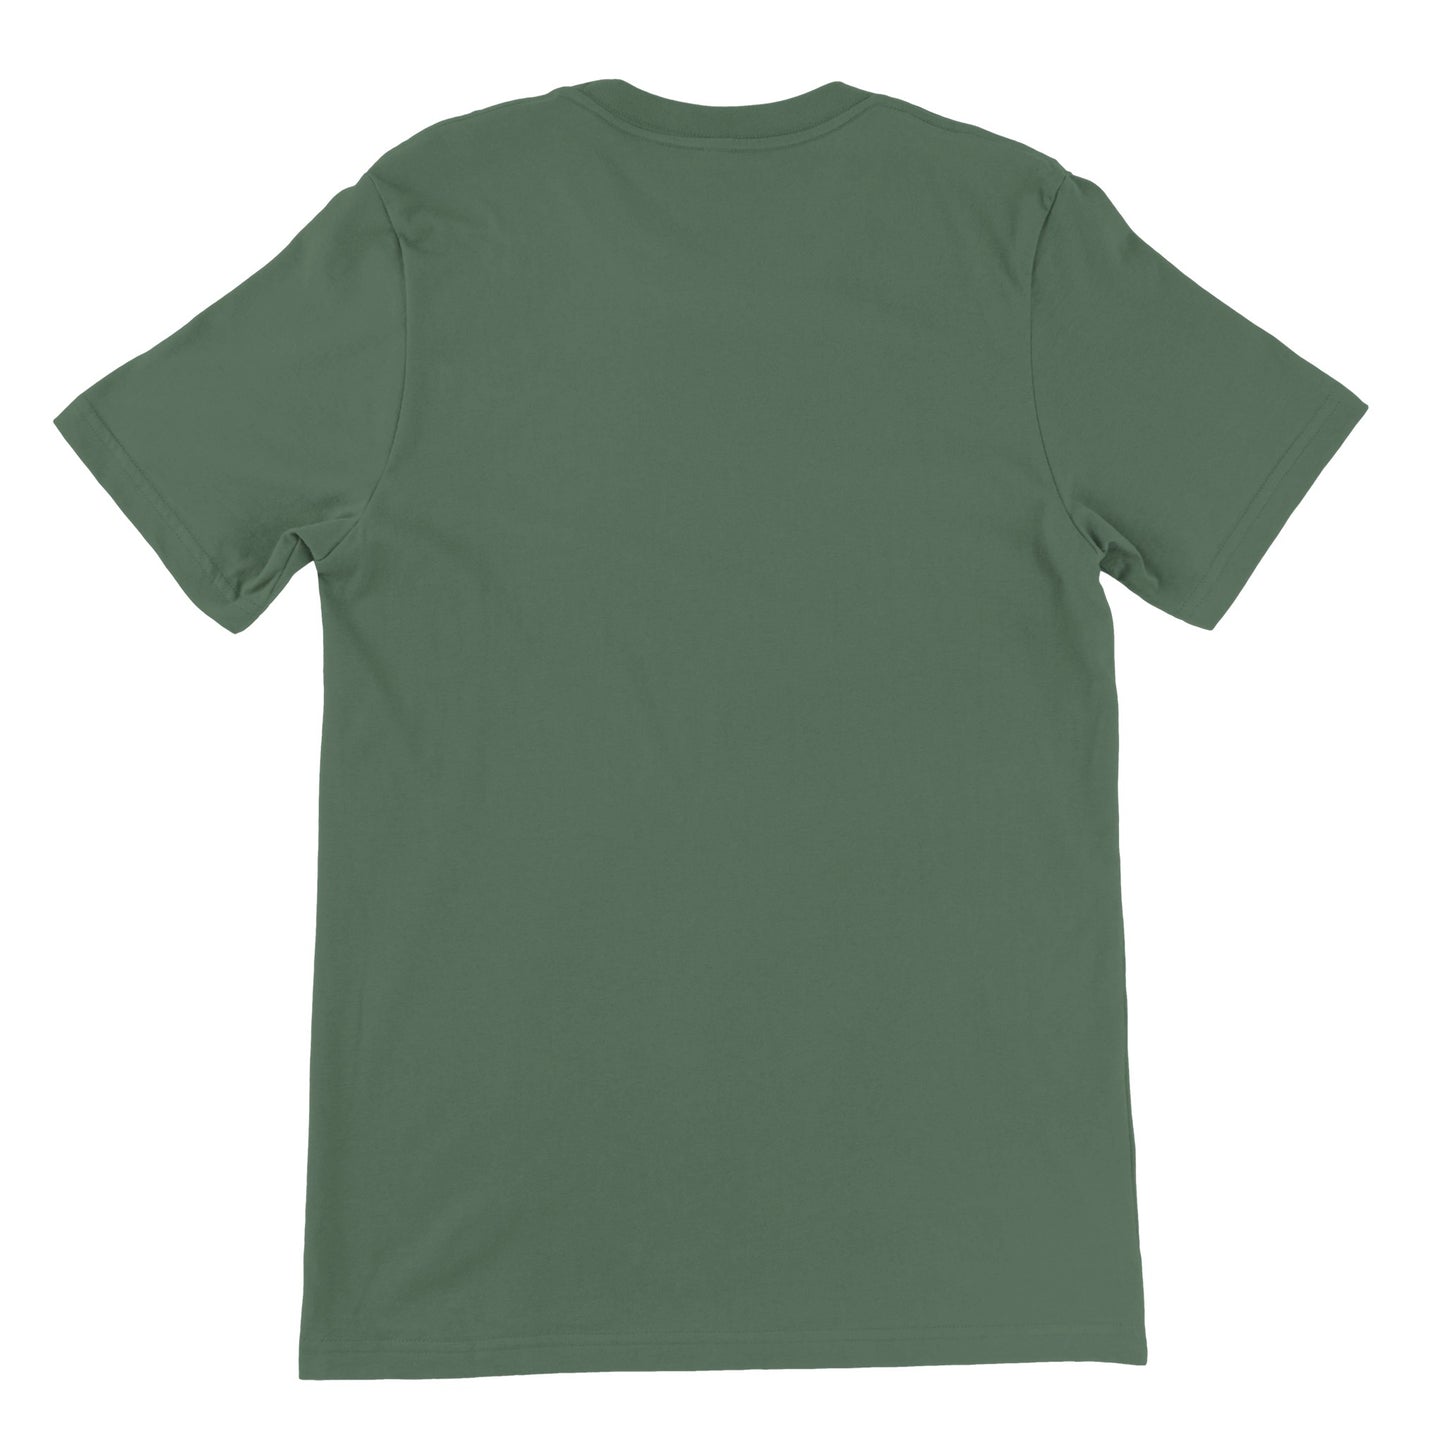 Günstiges Unisex-T-Shirt mit Rundhalsausschnitt/The Walking Dad